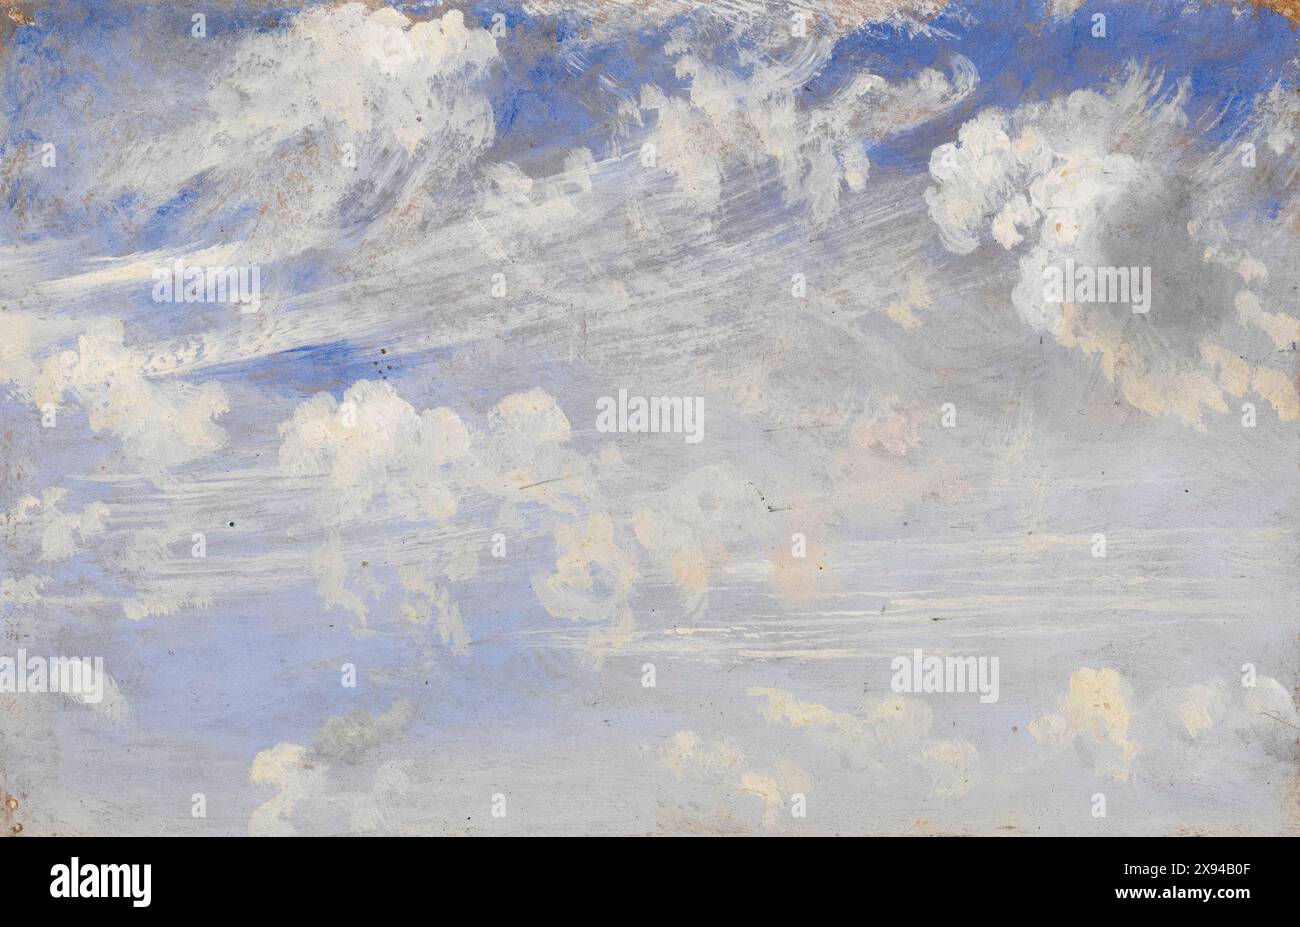 John Constable, Study of Cirrus Clouds, peinture à l'huile sur papier, vers 1822 Banque D'Images